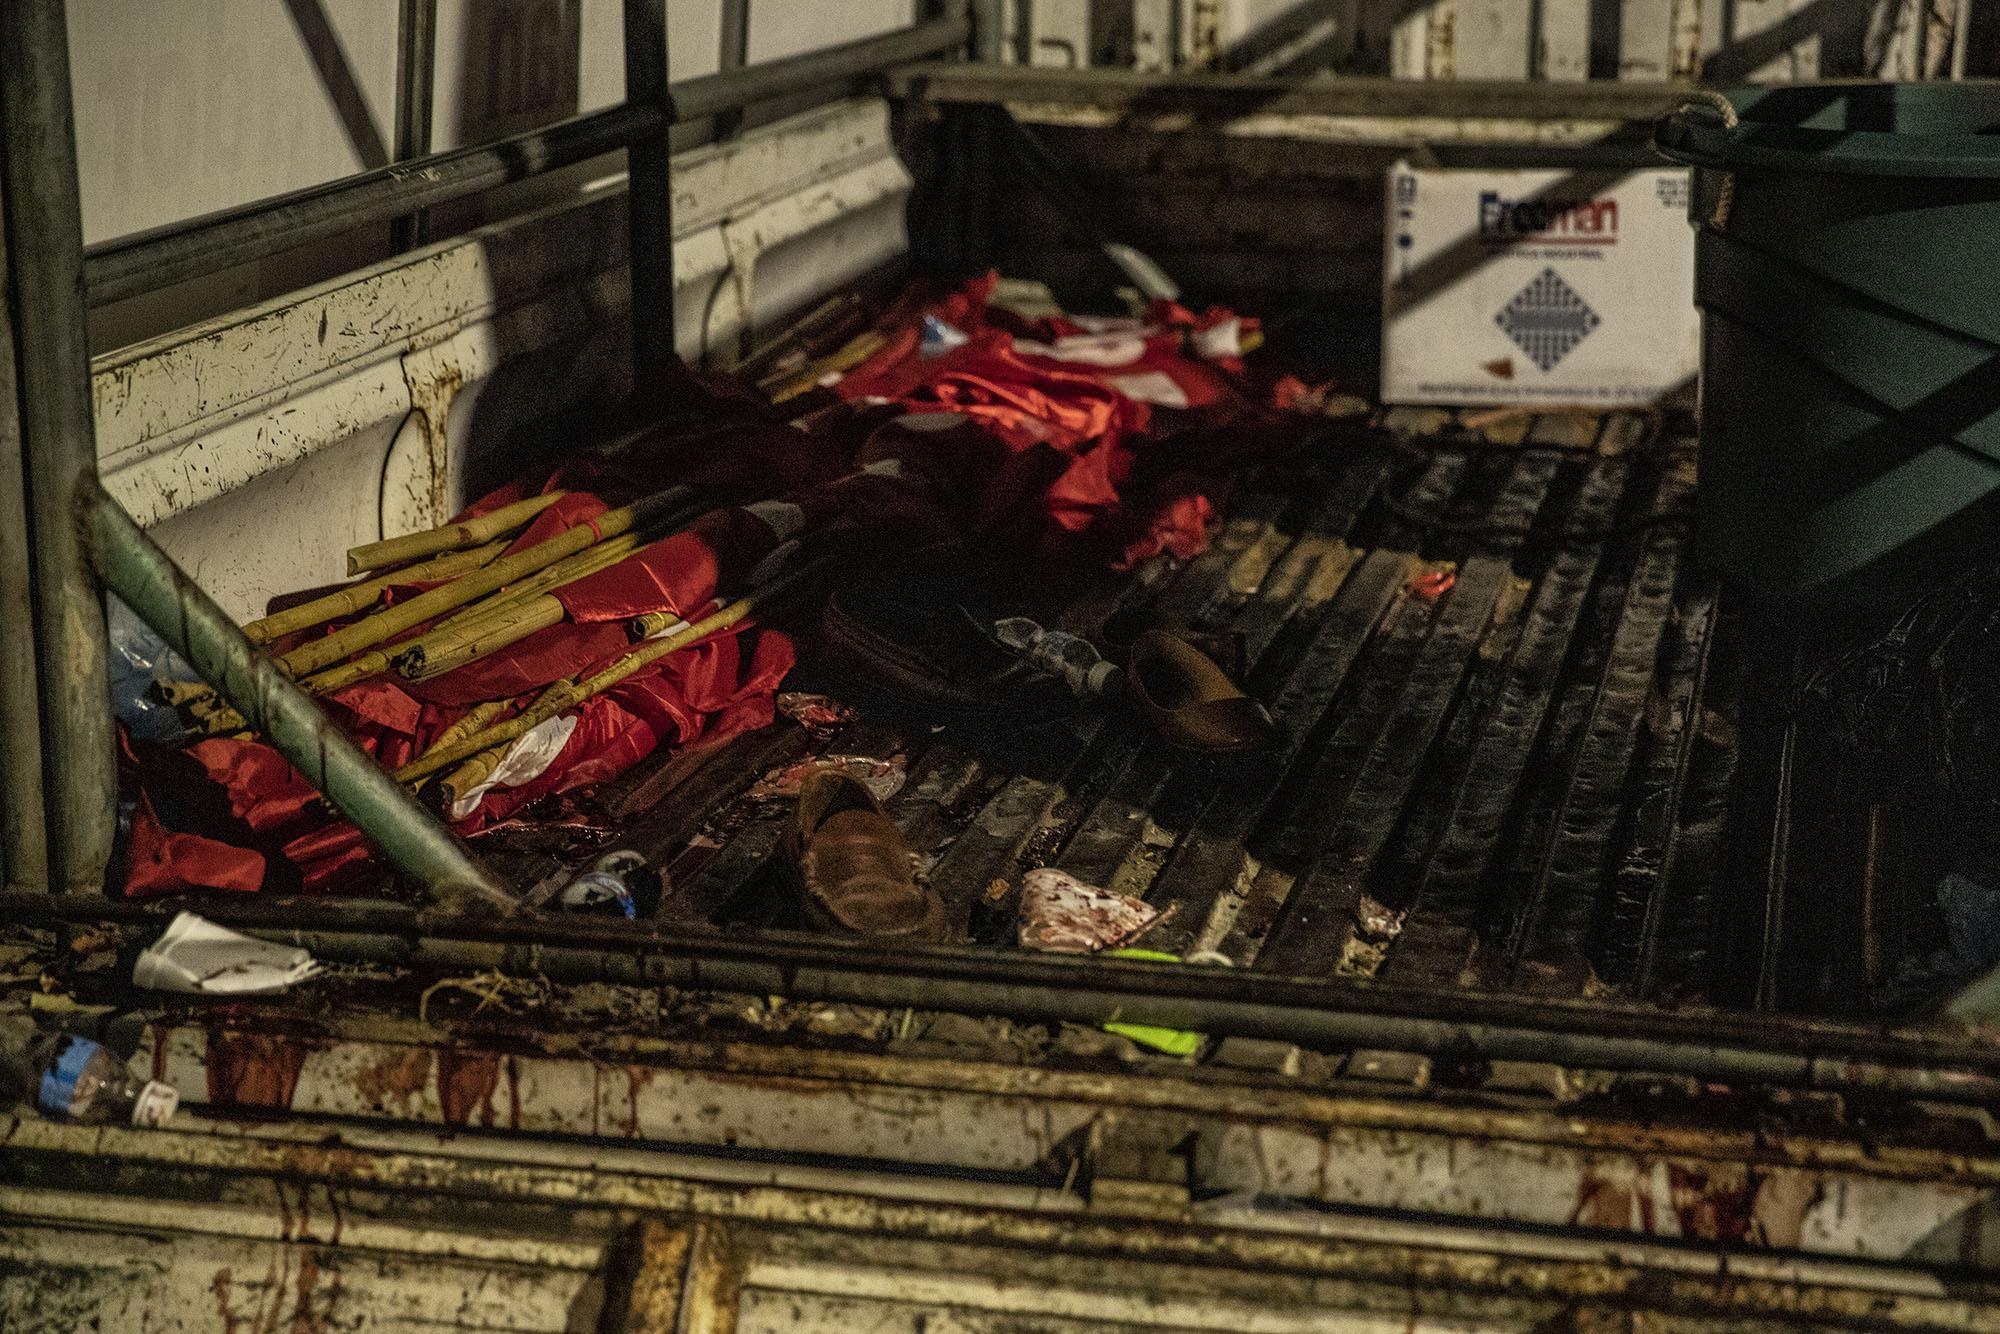 El atentado dejó a dos personas fallecidas, en el vehículo en el que se transportaban quedaron zapatos, banderas y manchas de sangre debido a los disparos que recibieron a las 6:25 de la noche. Foto de El Faro: Carlos Barrera